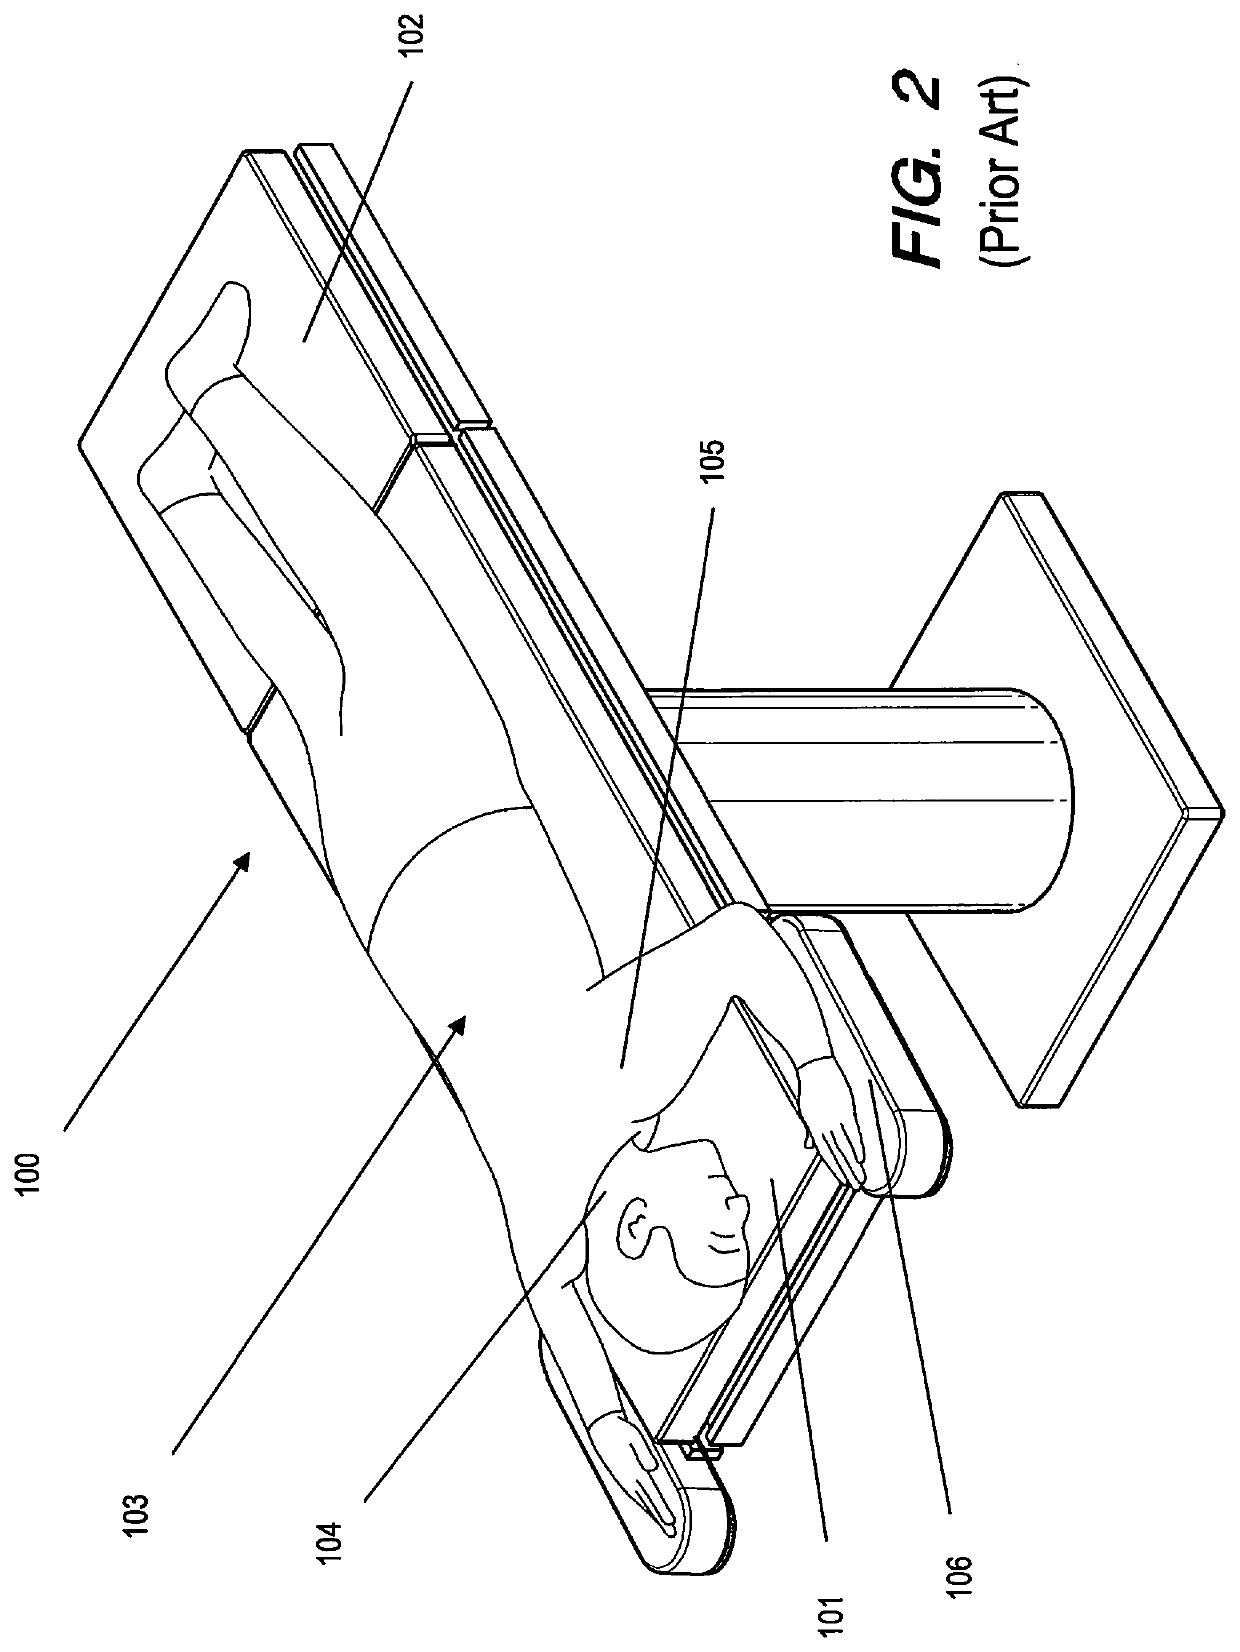 Adaptive ergonomic positioning device